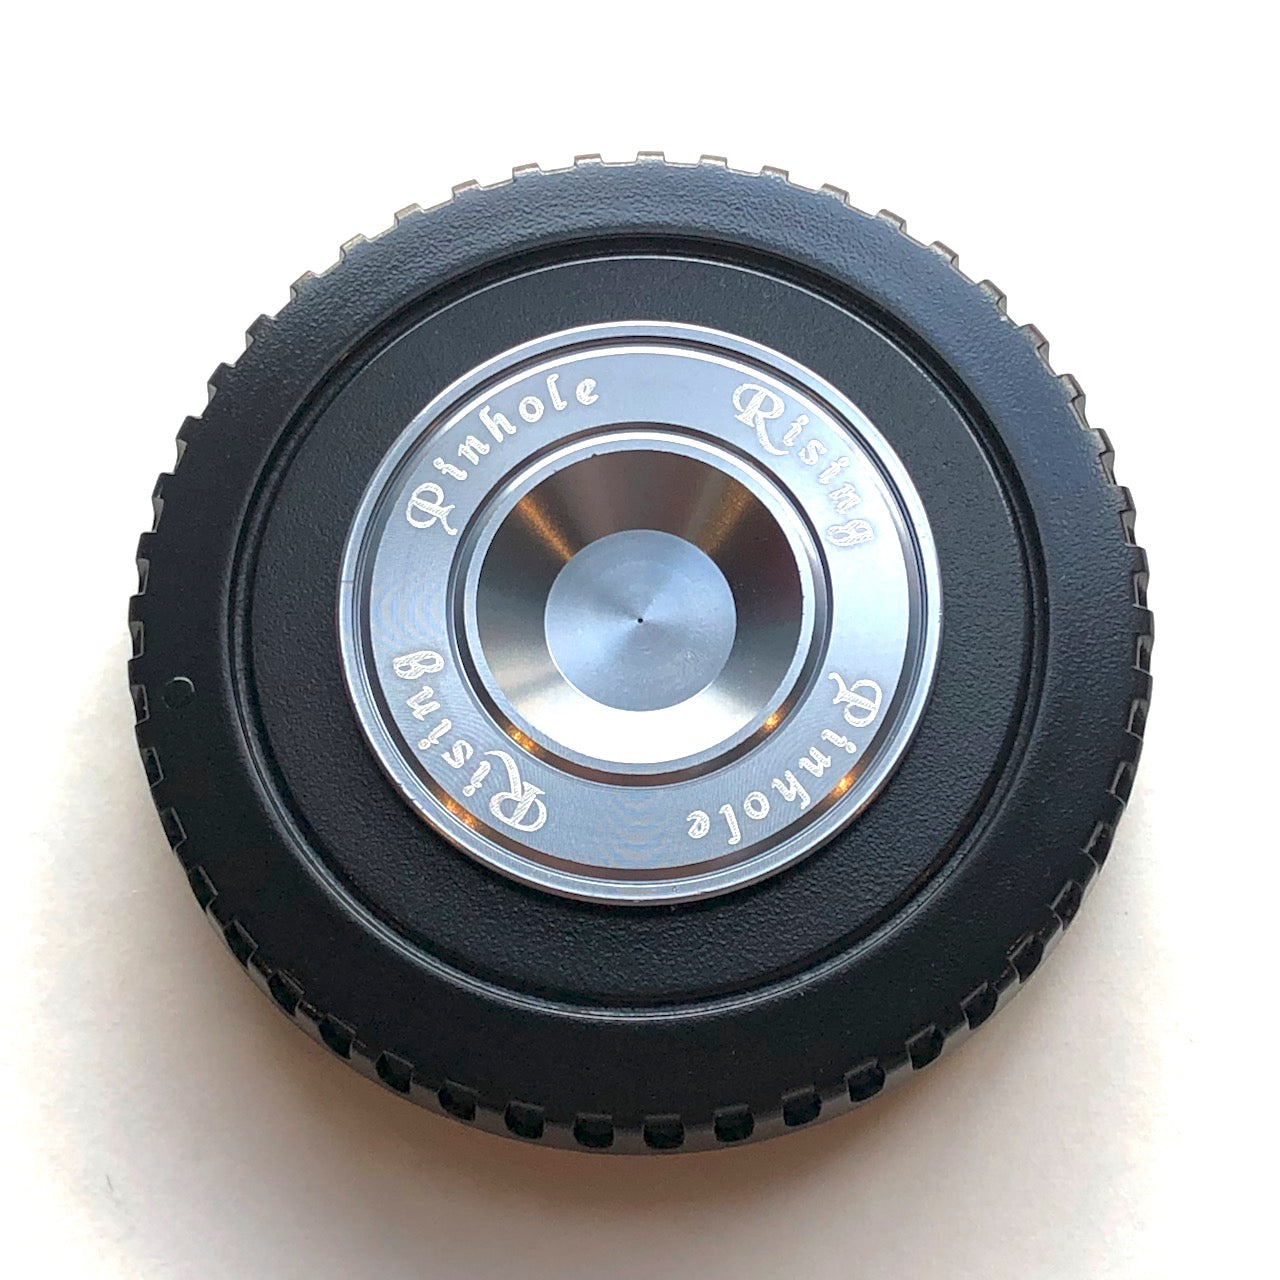 Rising Pinhole Camera Lens for Canon EF